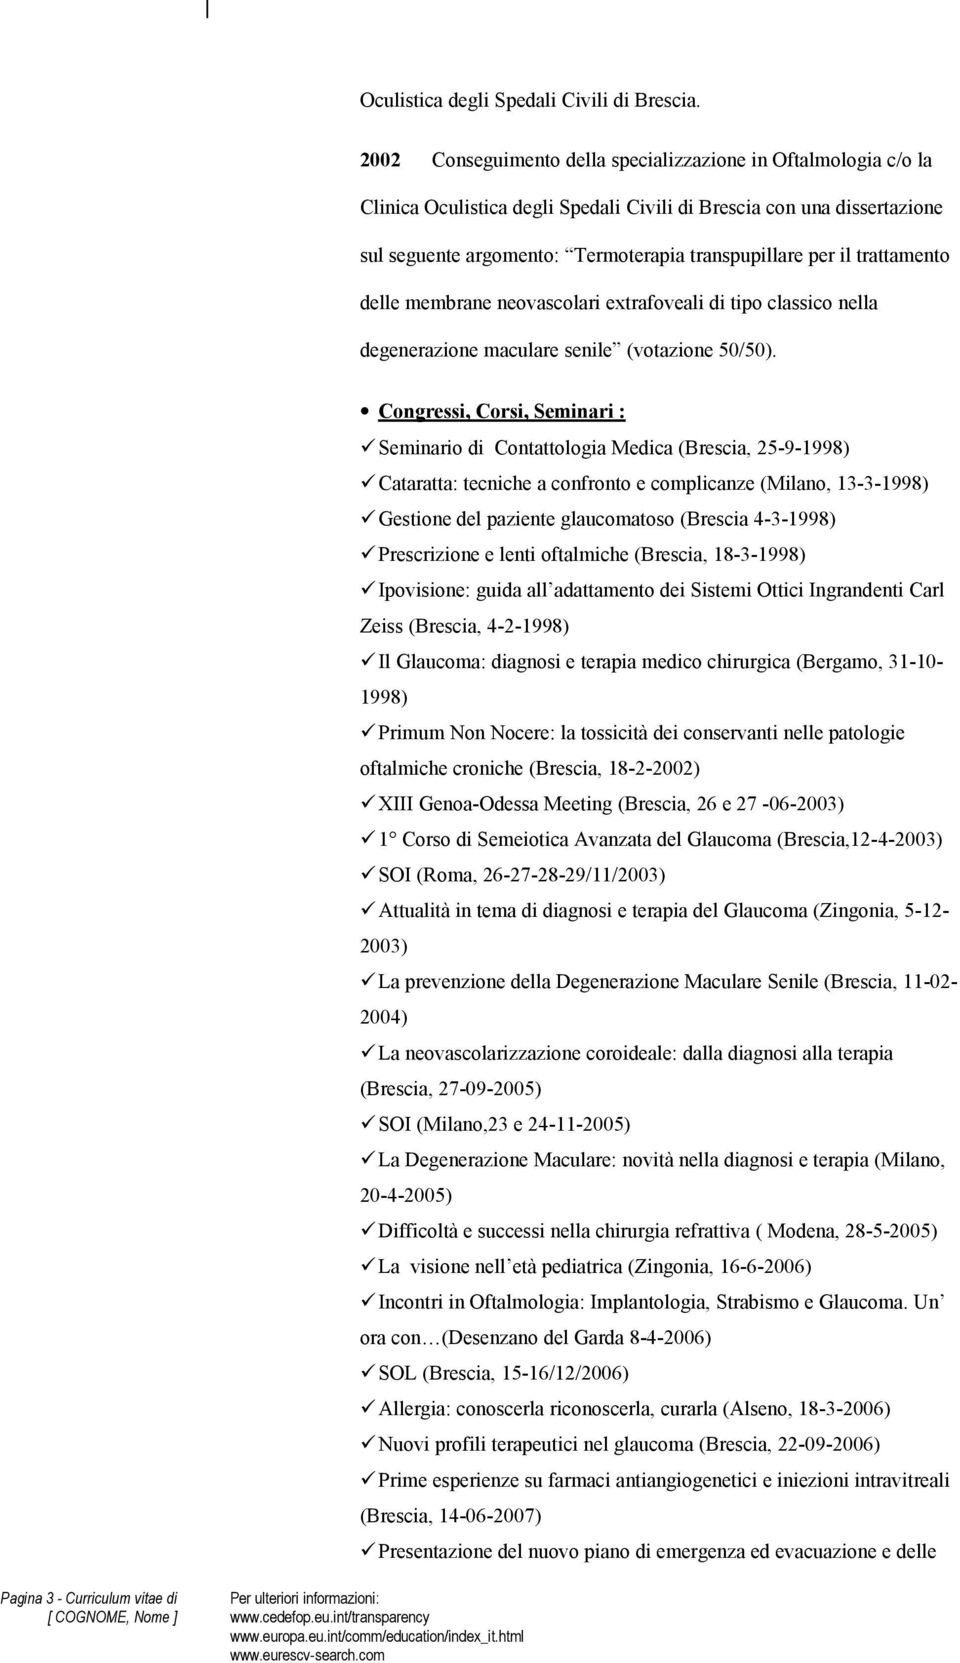 Seminario di Contattologia Medica (Brescia, 25-9-1998) Cataratta: tecniche a confronto e complicanze (Milano, 13-3-1998) Gestione del paziente glaucomatoso (Brescia 4-3-1998) Prescrizione e lenti